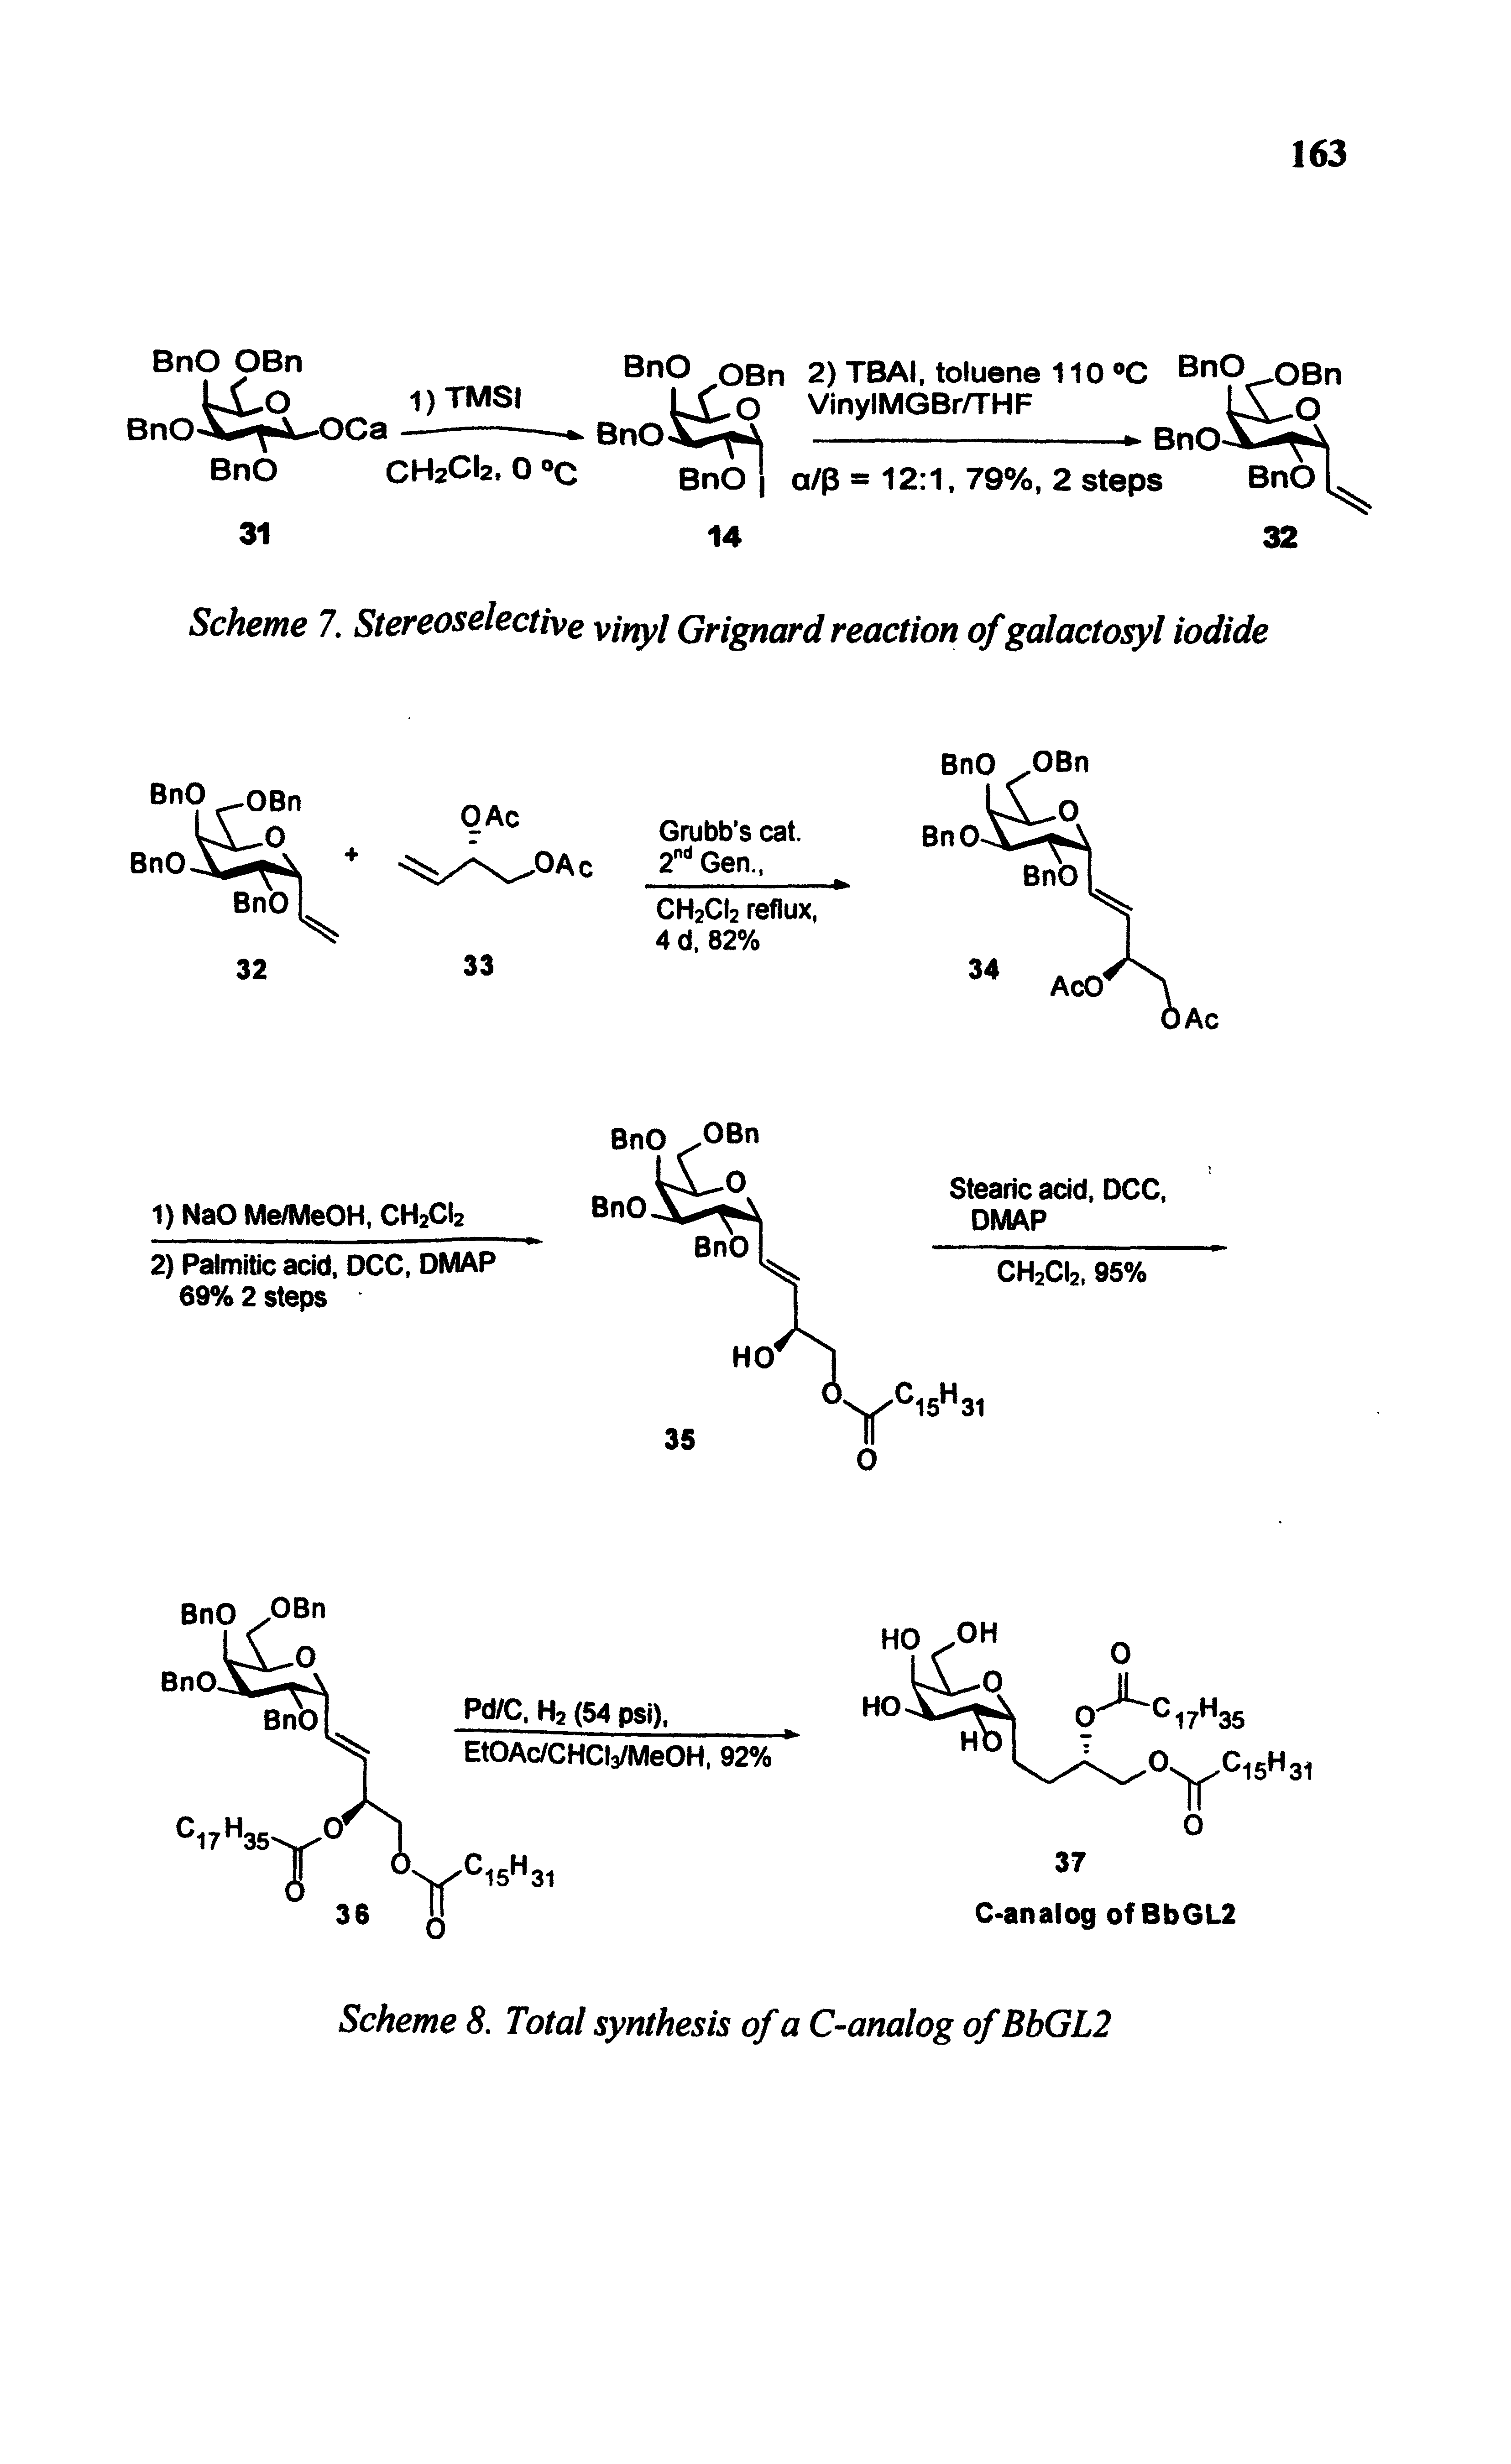 Scheme 7. Stereoselective vinyl Grignard reaction of galactosyl iodide...